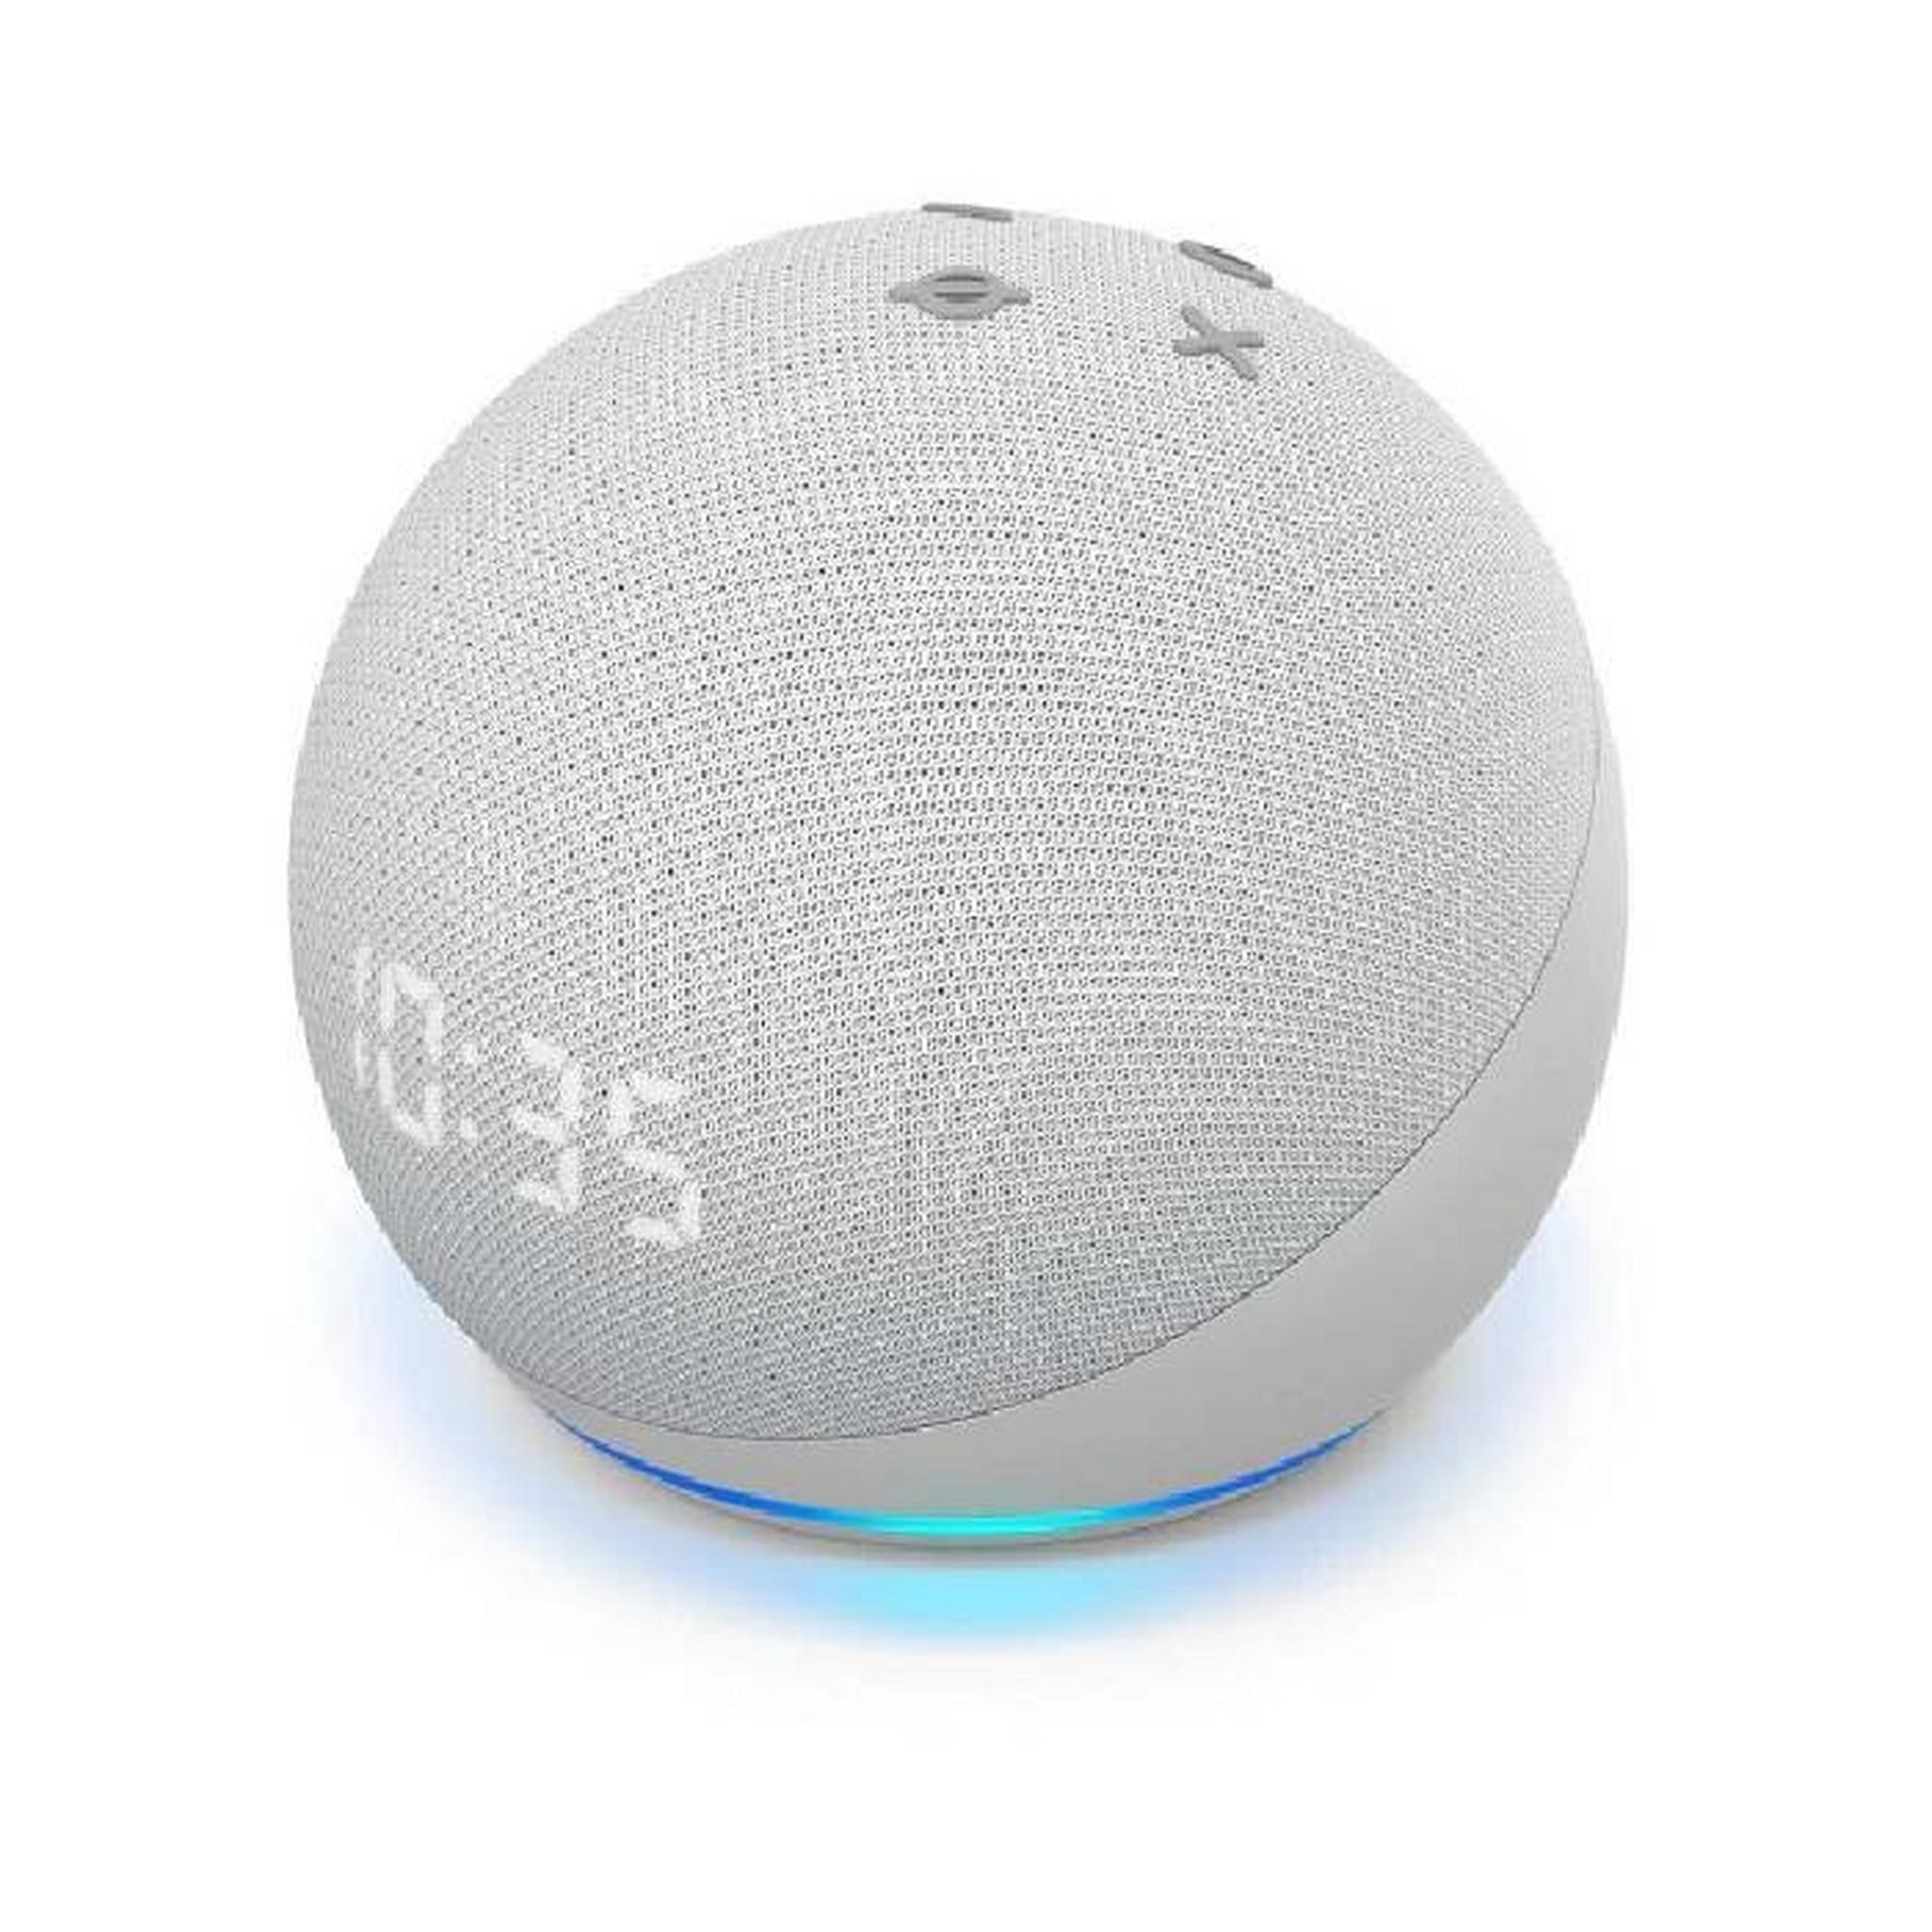 Amazon Echo Dot 5th Gen Smart Spreaker with Clock, ECD5GNCLK-WHT– White